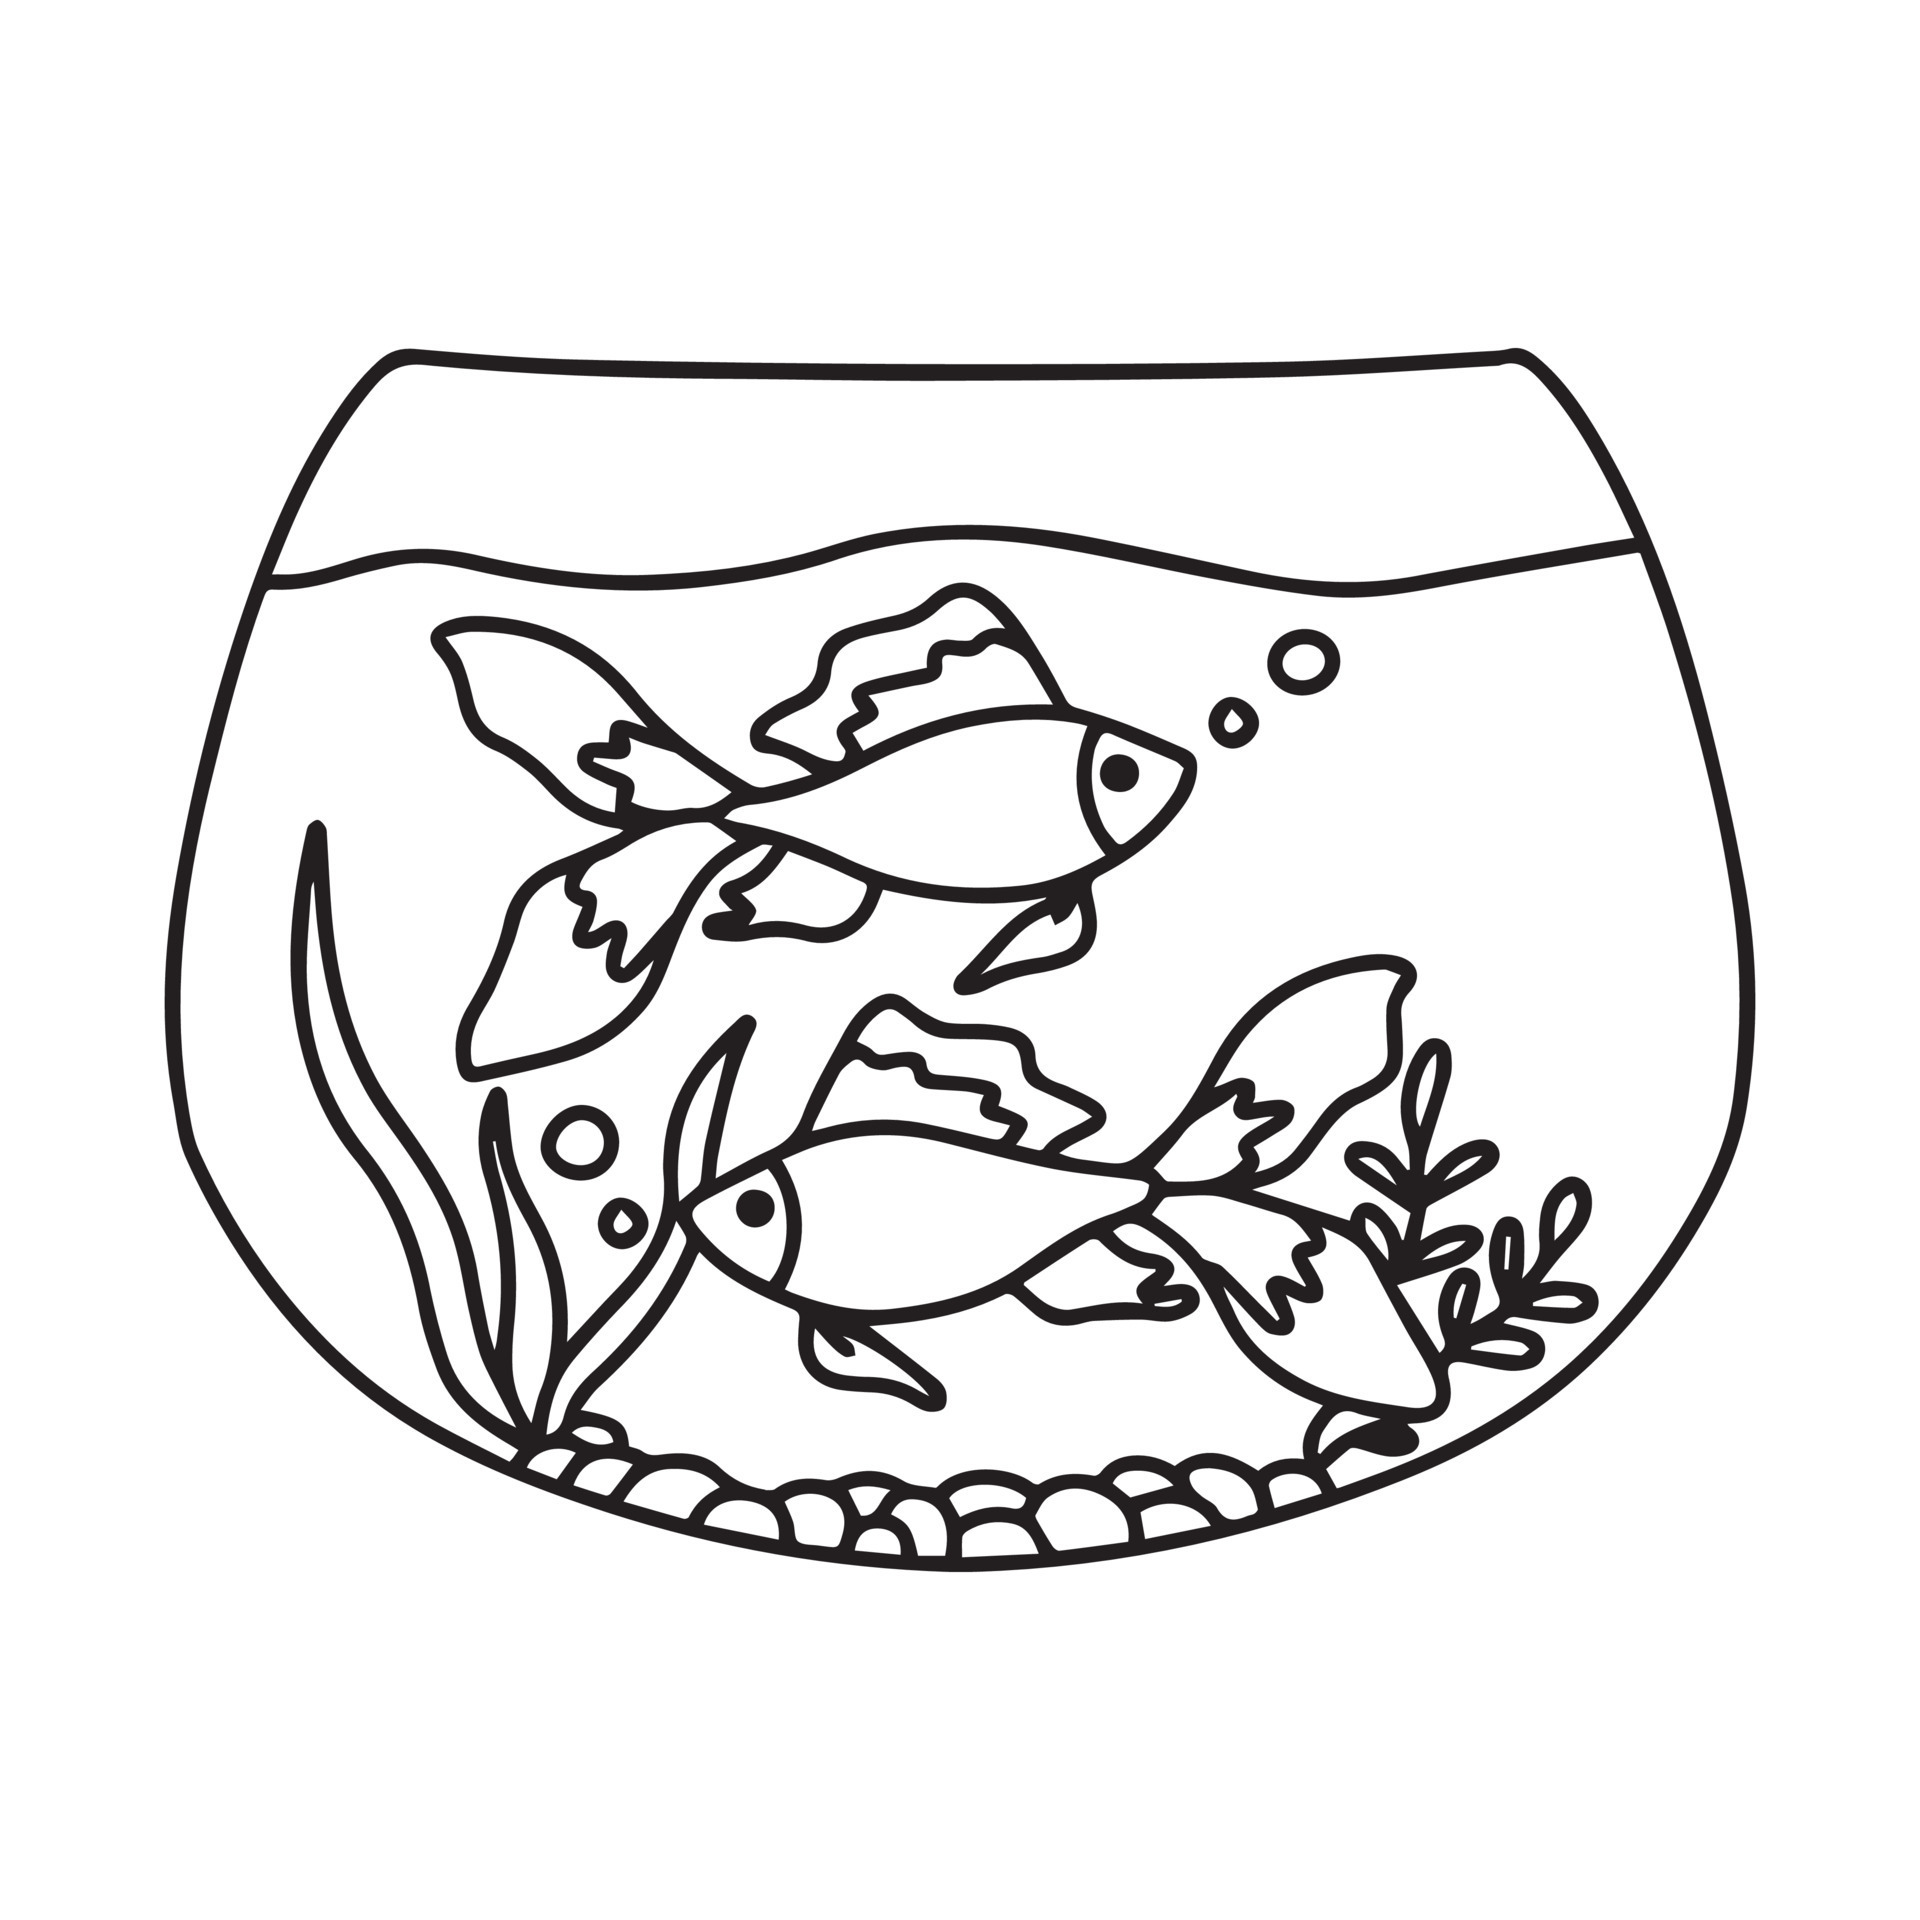 acuario de ilustración con peces dorados sobre fondo blanco. silueta  vectorial de peces dorados con agua, algas, arena y piedras al estilo de  las caricaturas. 8977448 Vector en Vecteezy